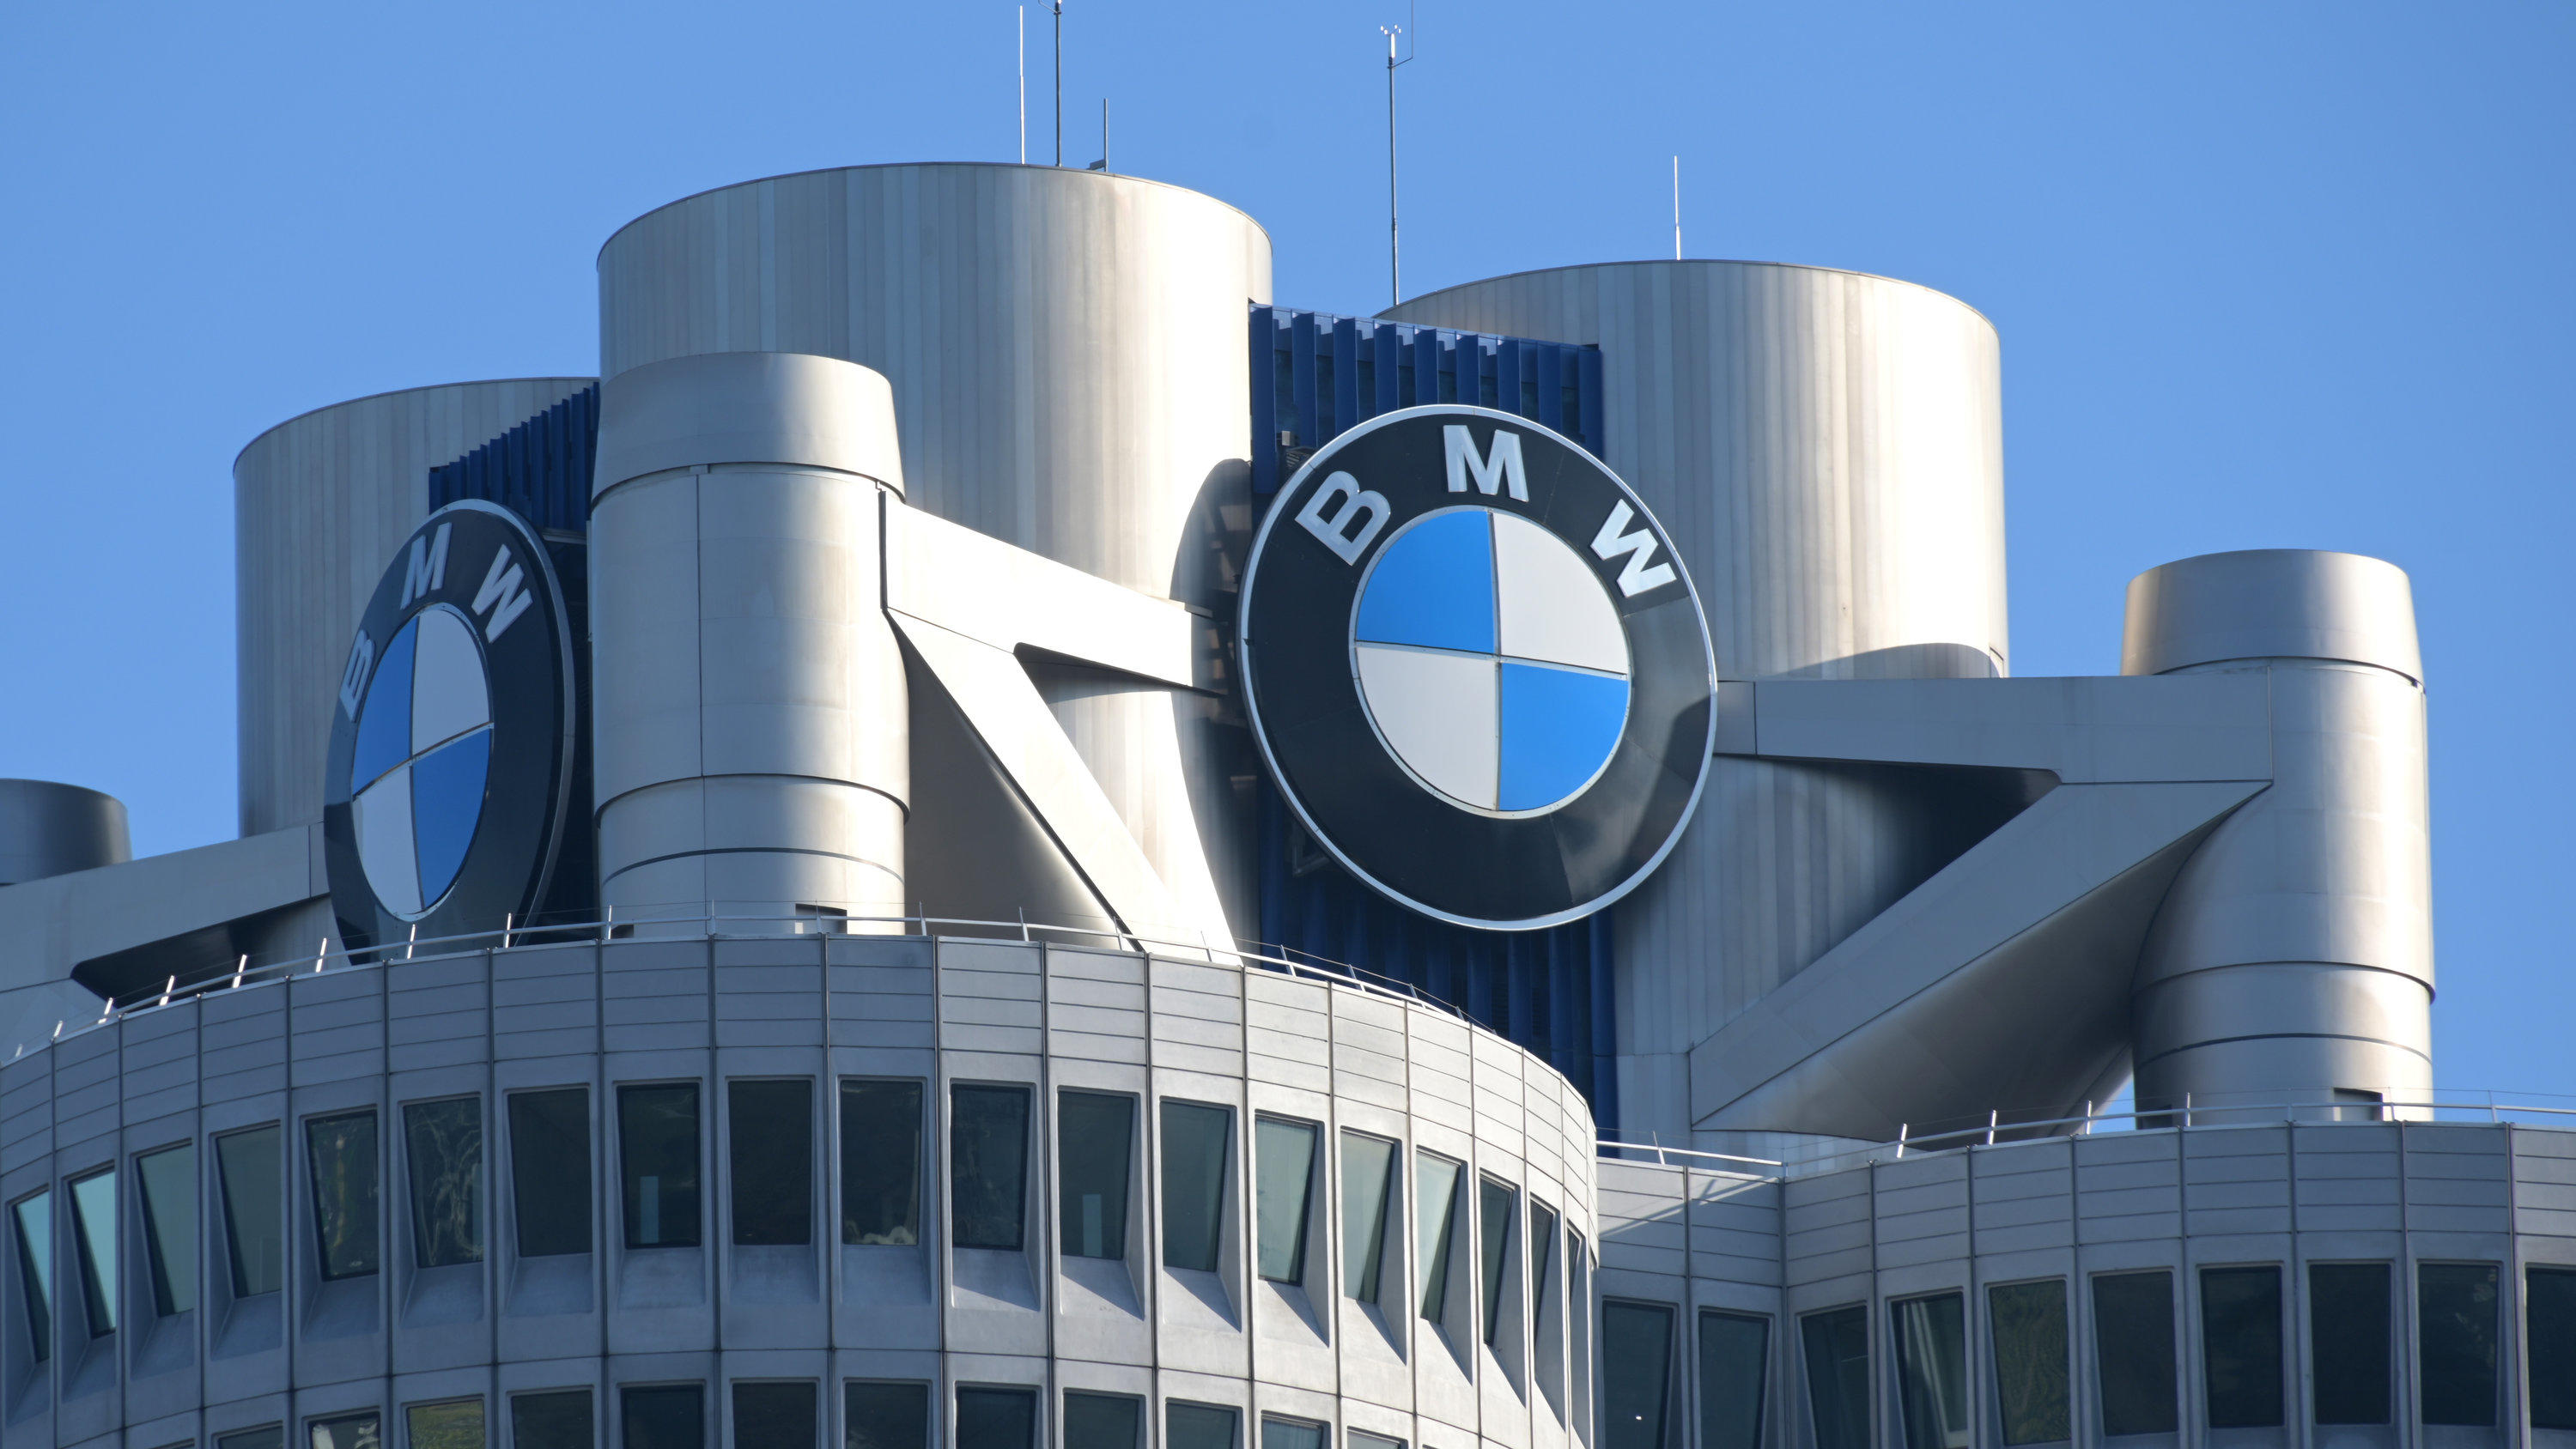 ARCHIV - 20.03.2019, Bayern, München: Das BMW-Logo auf dem Firmensitz des Automobilherstellers BMW vor Beginn der Bilanz-Pressekonferenz. (zu dpa: "BMW will Stellen streichen - Ausblick für Kernsparte gesenkt") Foto: Tobias Hase/dpa +++ dpa-Bildfunk 